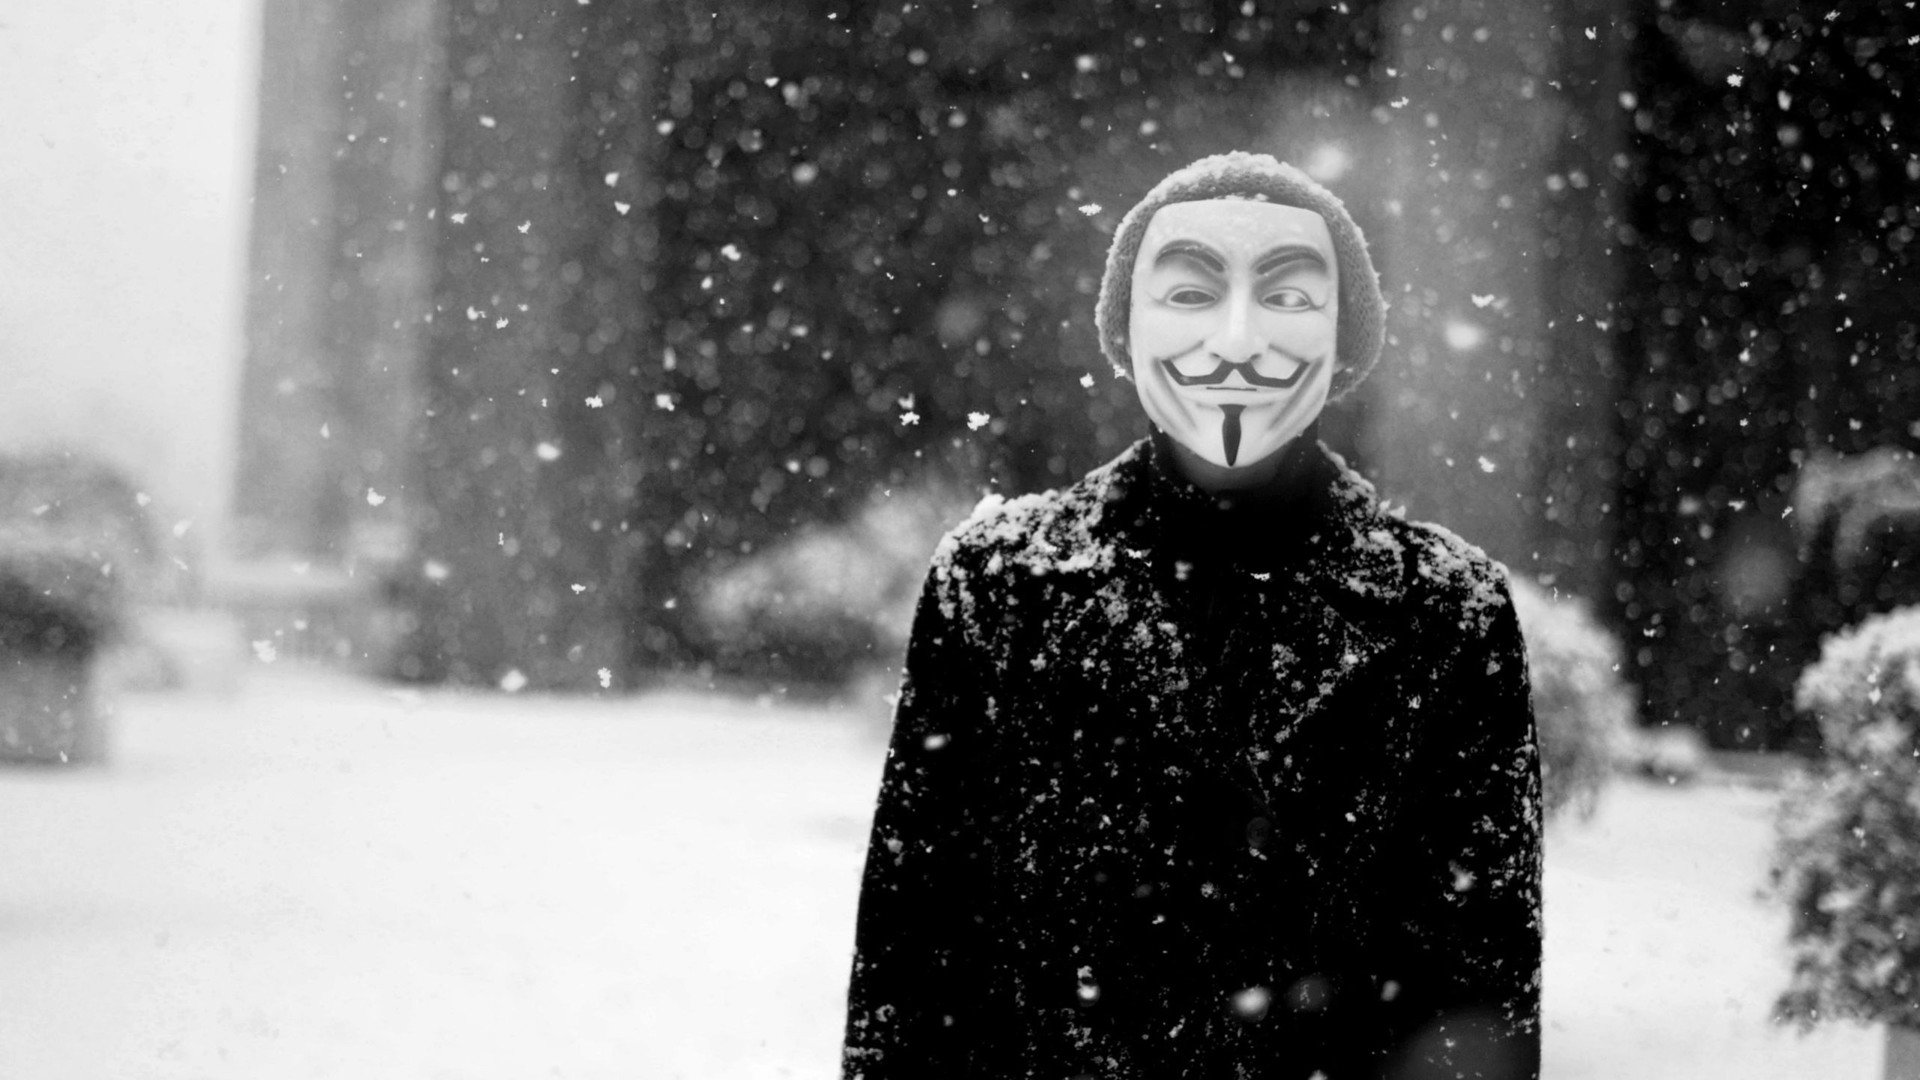 Hd Guy In Anonymous Mask - HD Wallpaper 